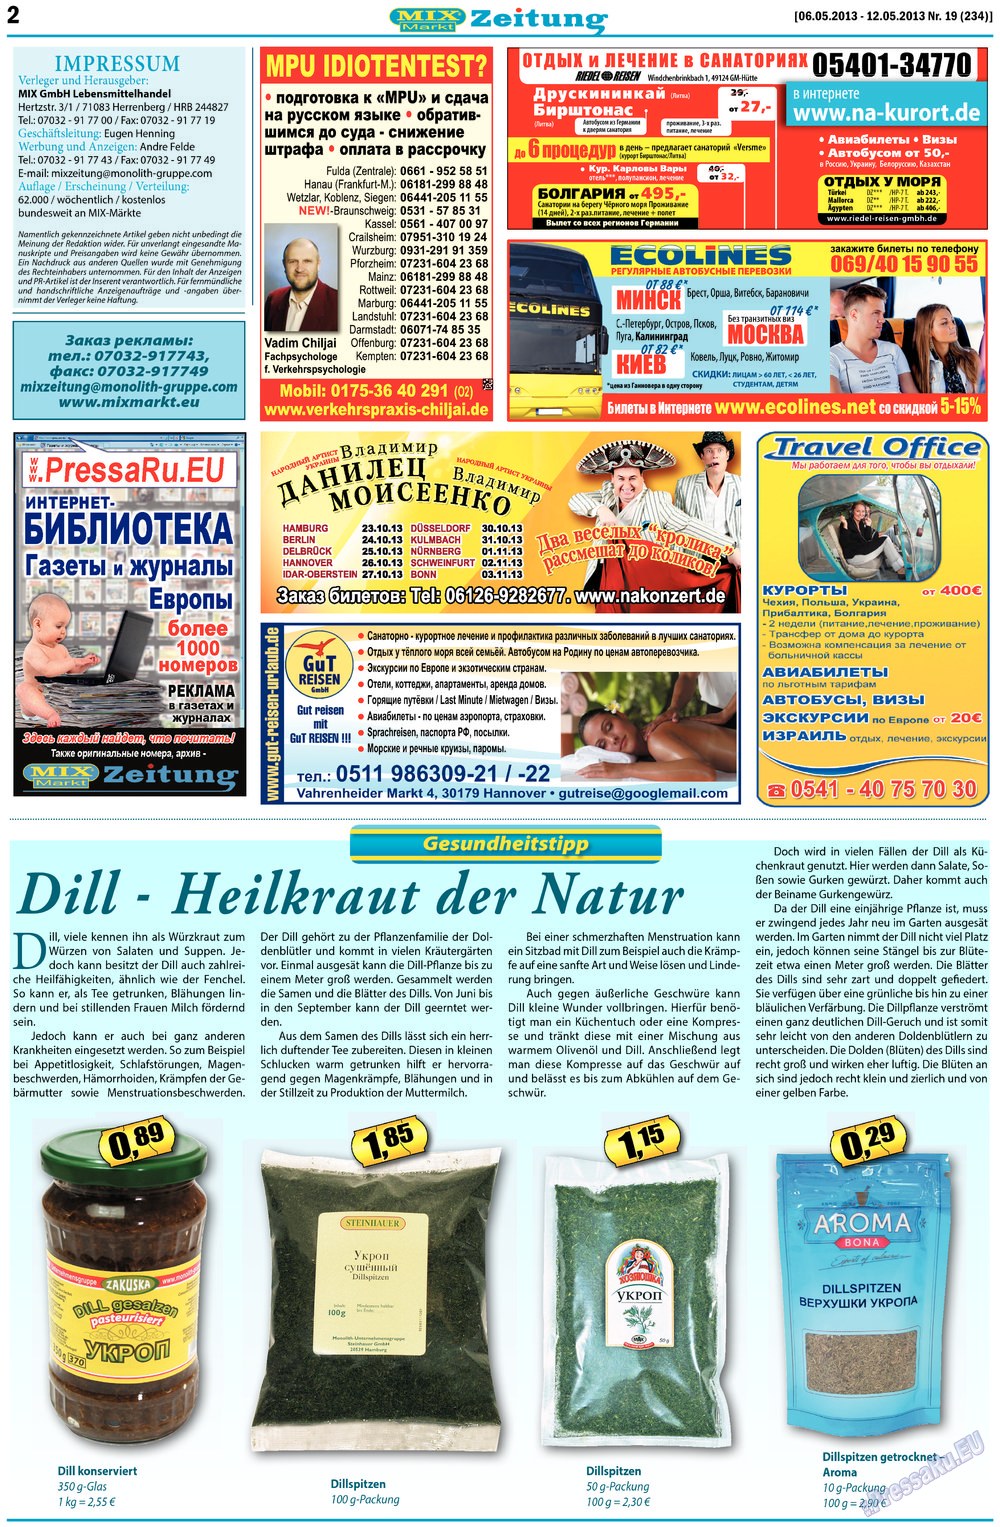 MIX-Markt Zeitung, газета. 2013 №19 стр.2